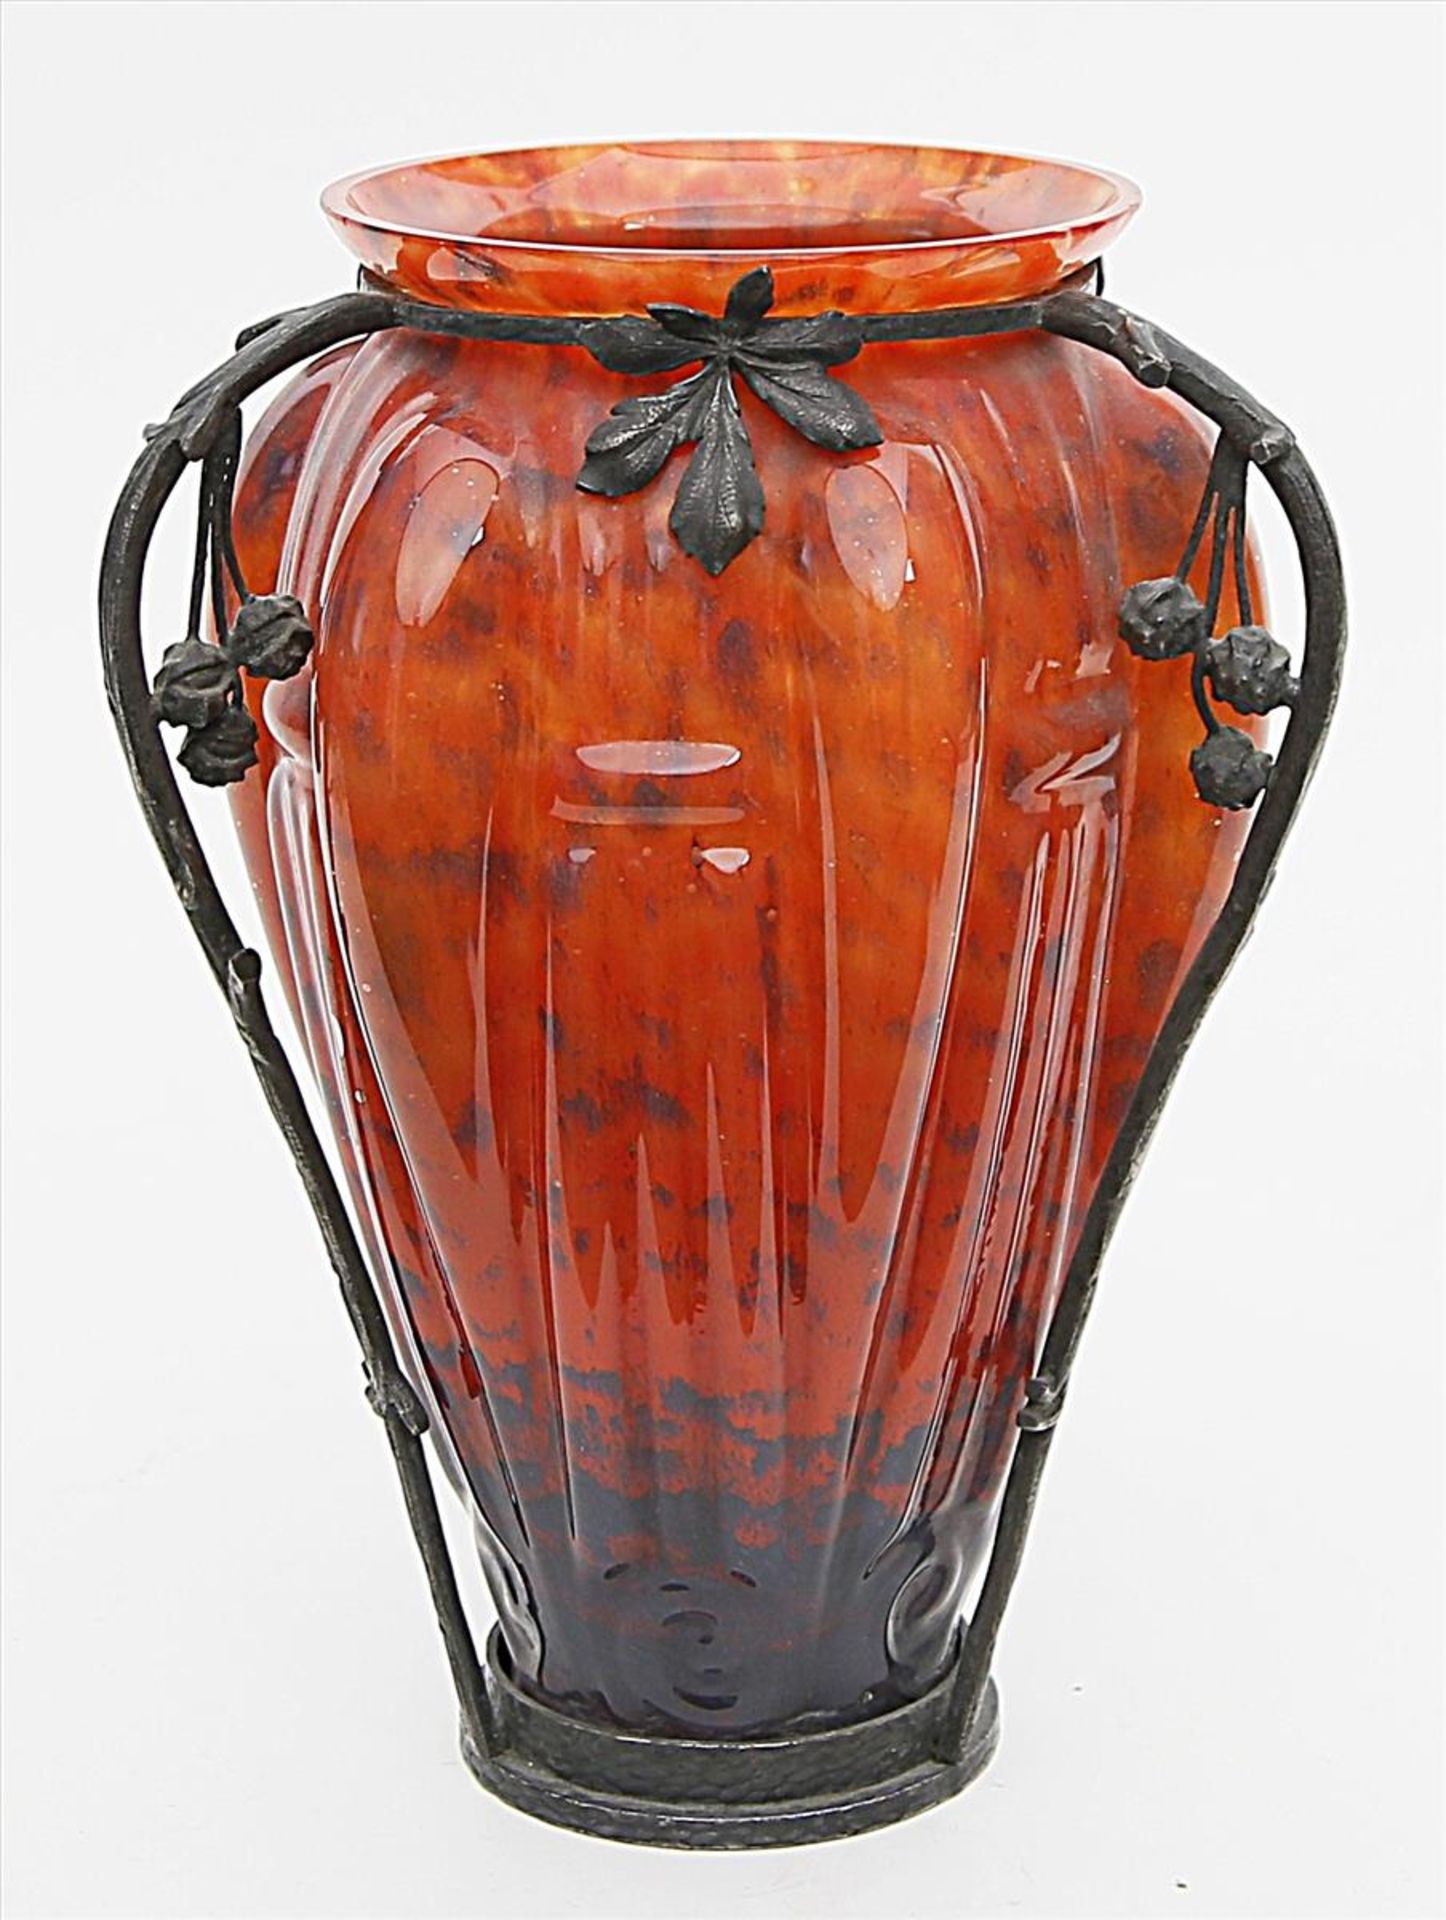 Art Deco-Vase.Farbloses, reliefiertes Glas mit verschiedenfarbigen Pulvereinschmelzungen. Florale